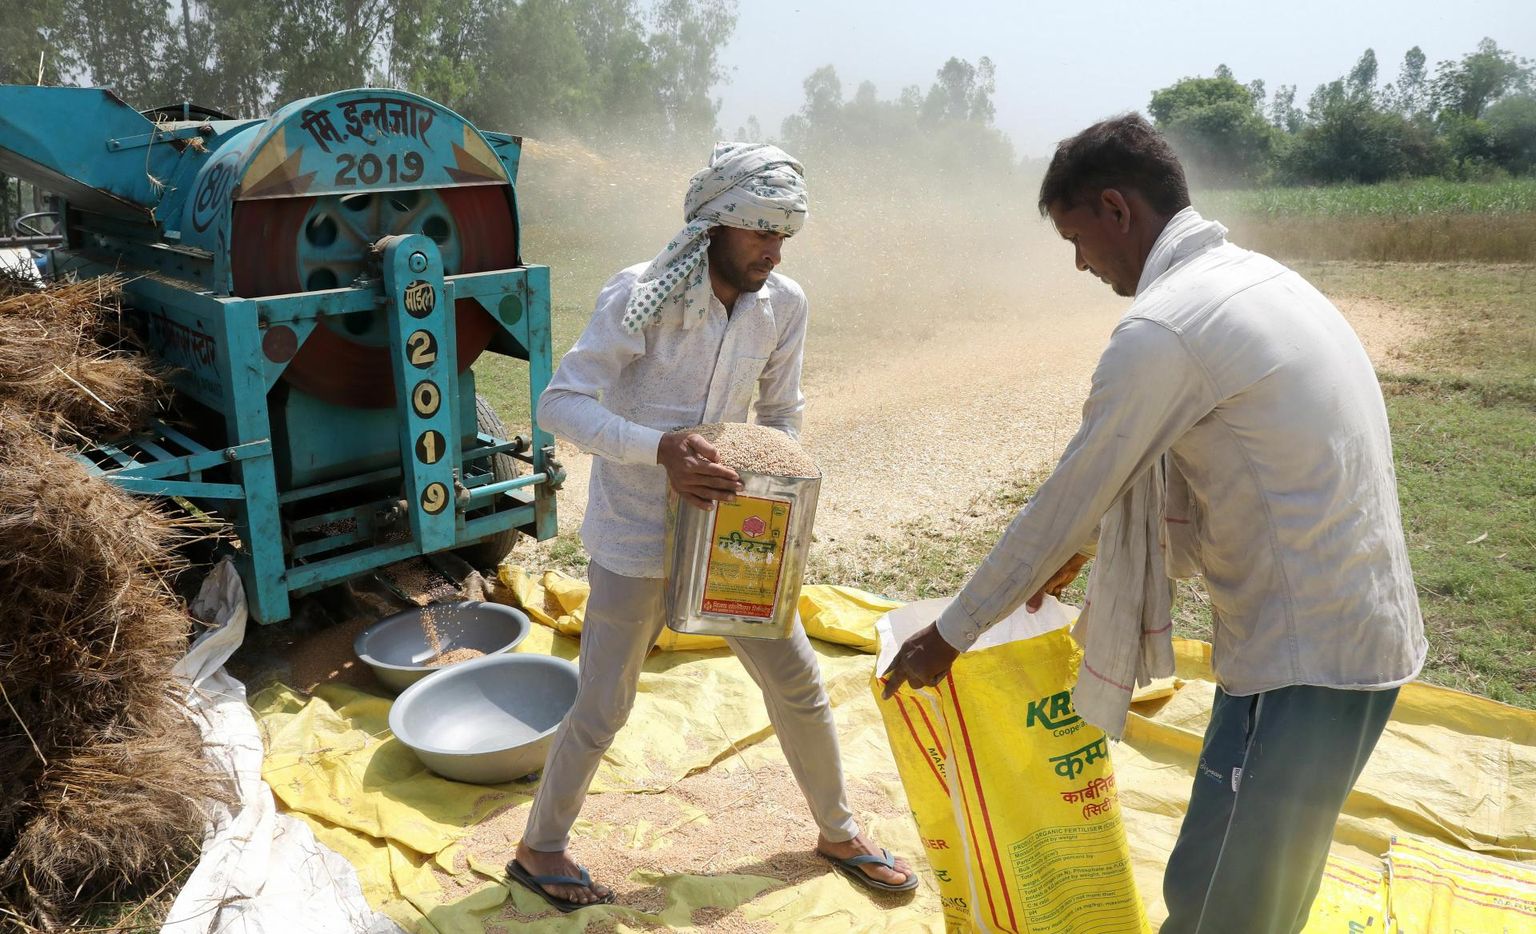 Põuast piinatud Indias jäi nisusaak sedavõrd kasinaks, et valitsus keelas vilja väljaveo. India on suuruselt teine nisutootja maailmas ja ekspordikeeld lennutas vilja börsihinna lakke. 